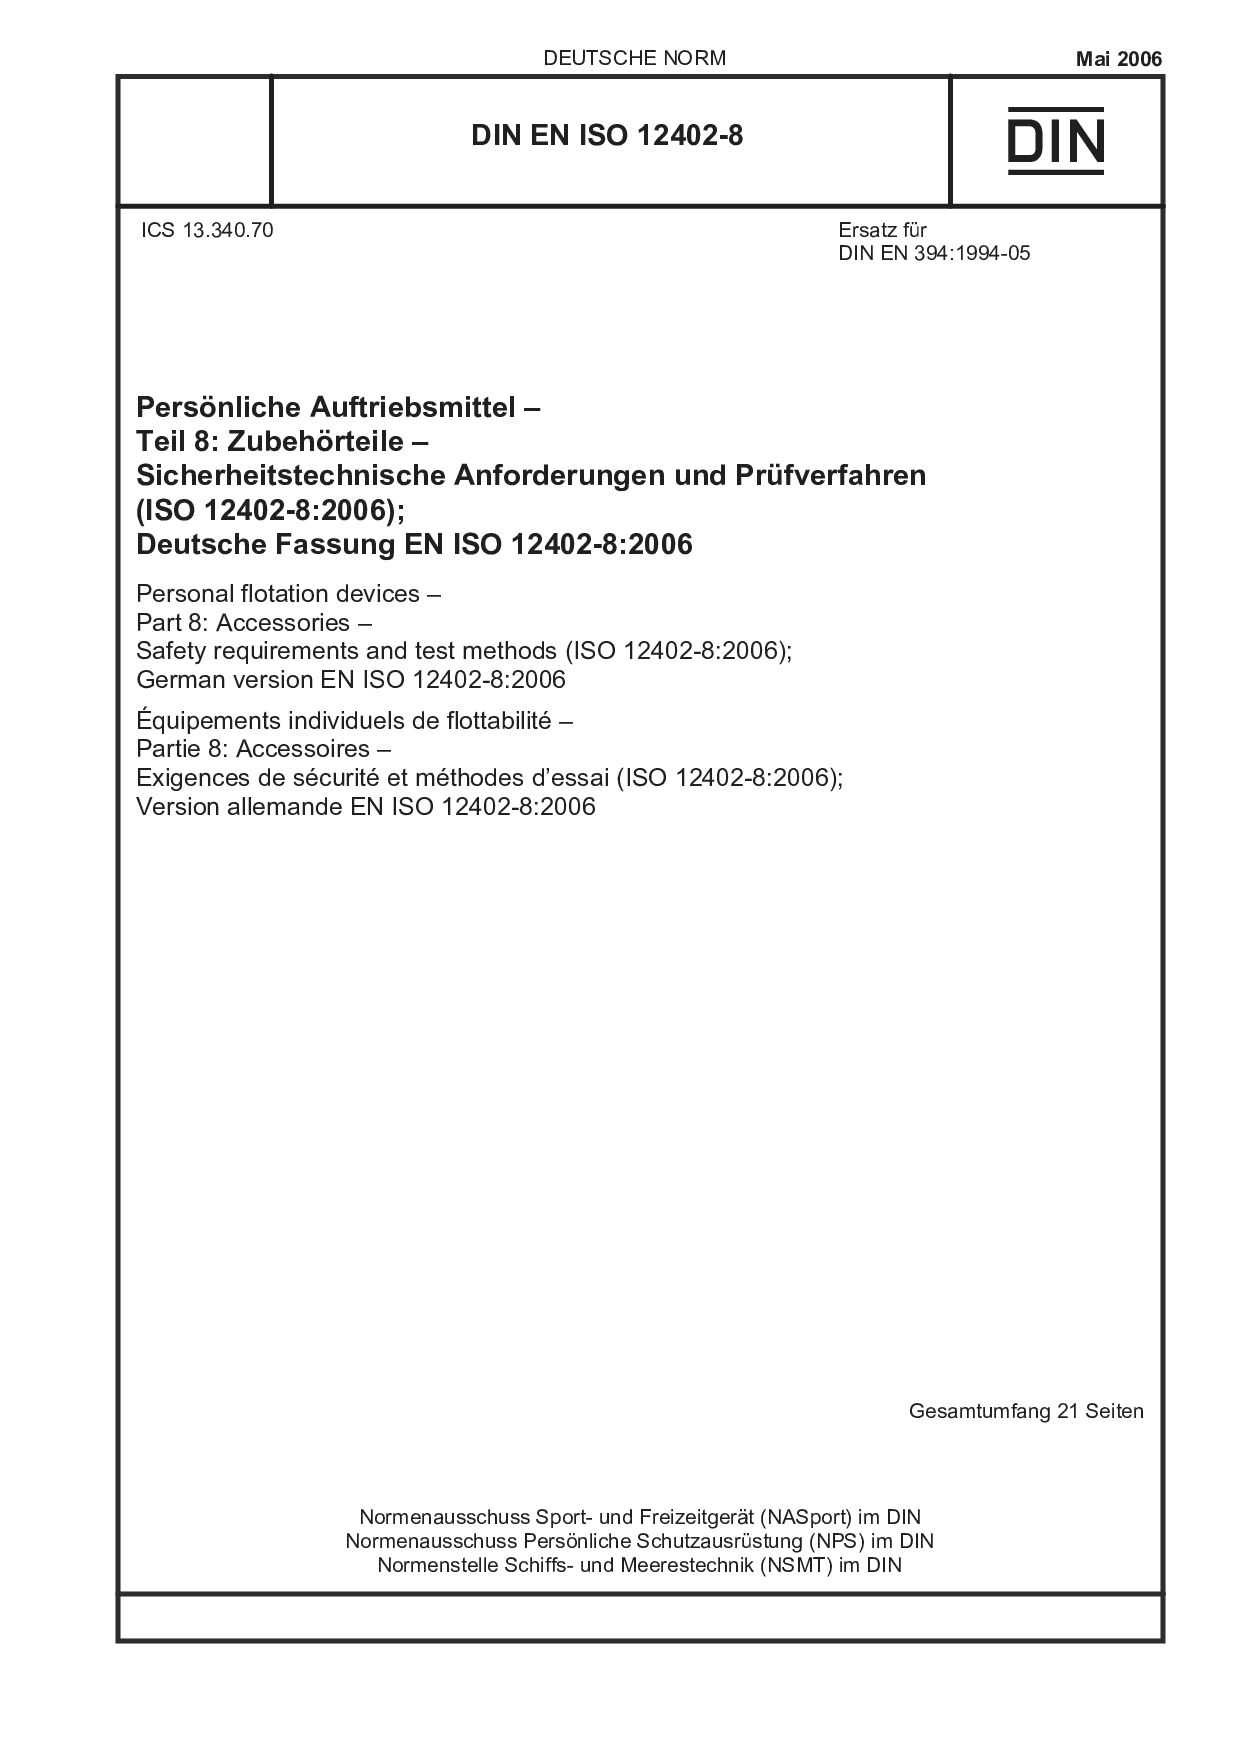 DIN EN ISO 12402-8:2006